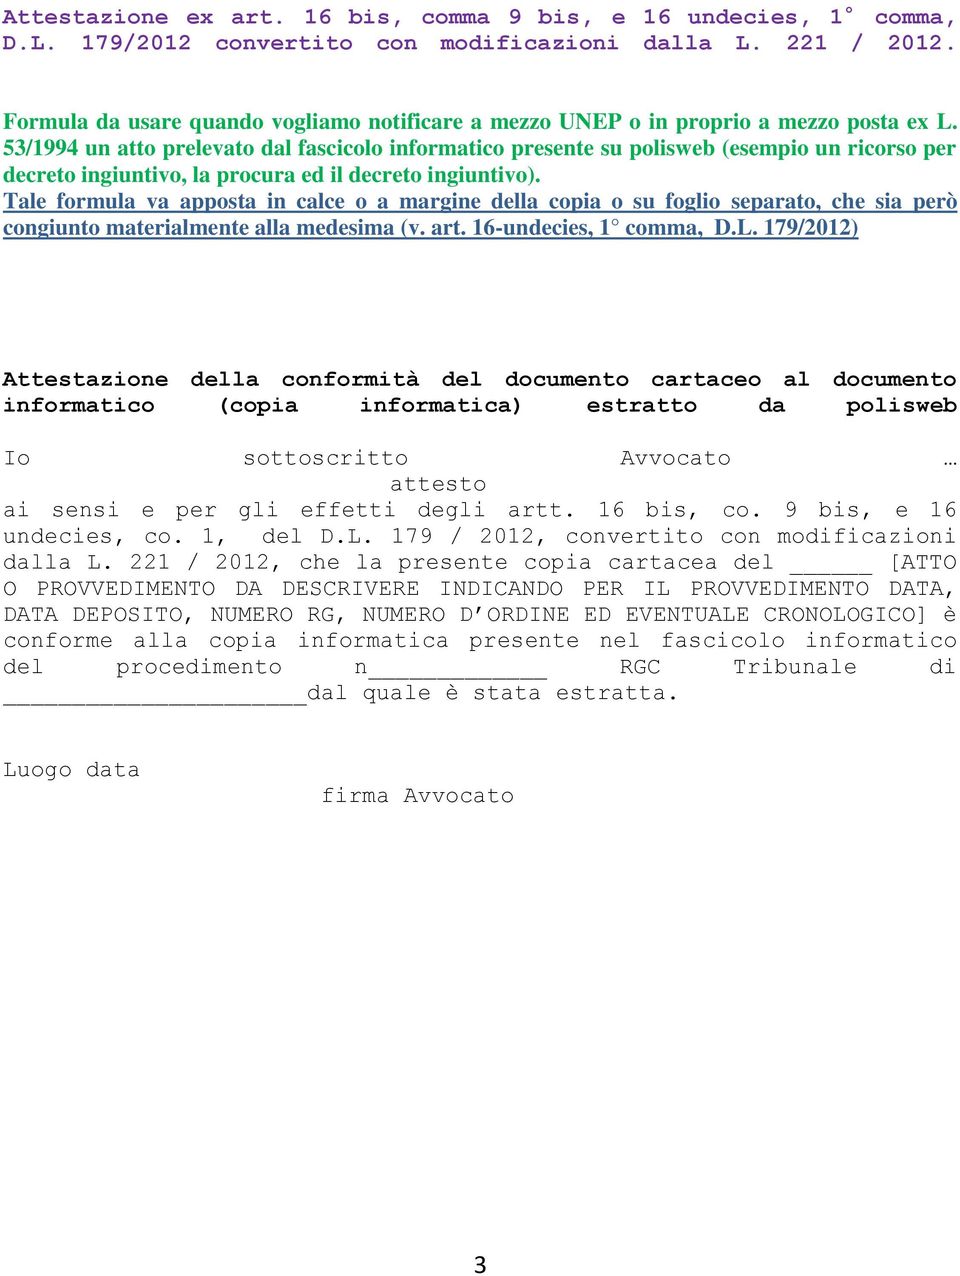 53/1994 un atto prelevato dal fascicolo informatico presente su polisweb (esempio un ricorso per decreto ingiuntivo, la procura ed il decreto ingiuntivo).